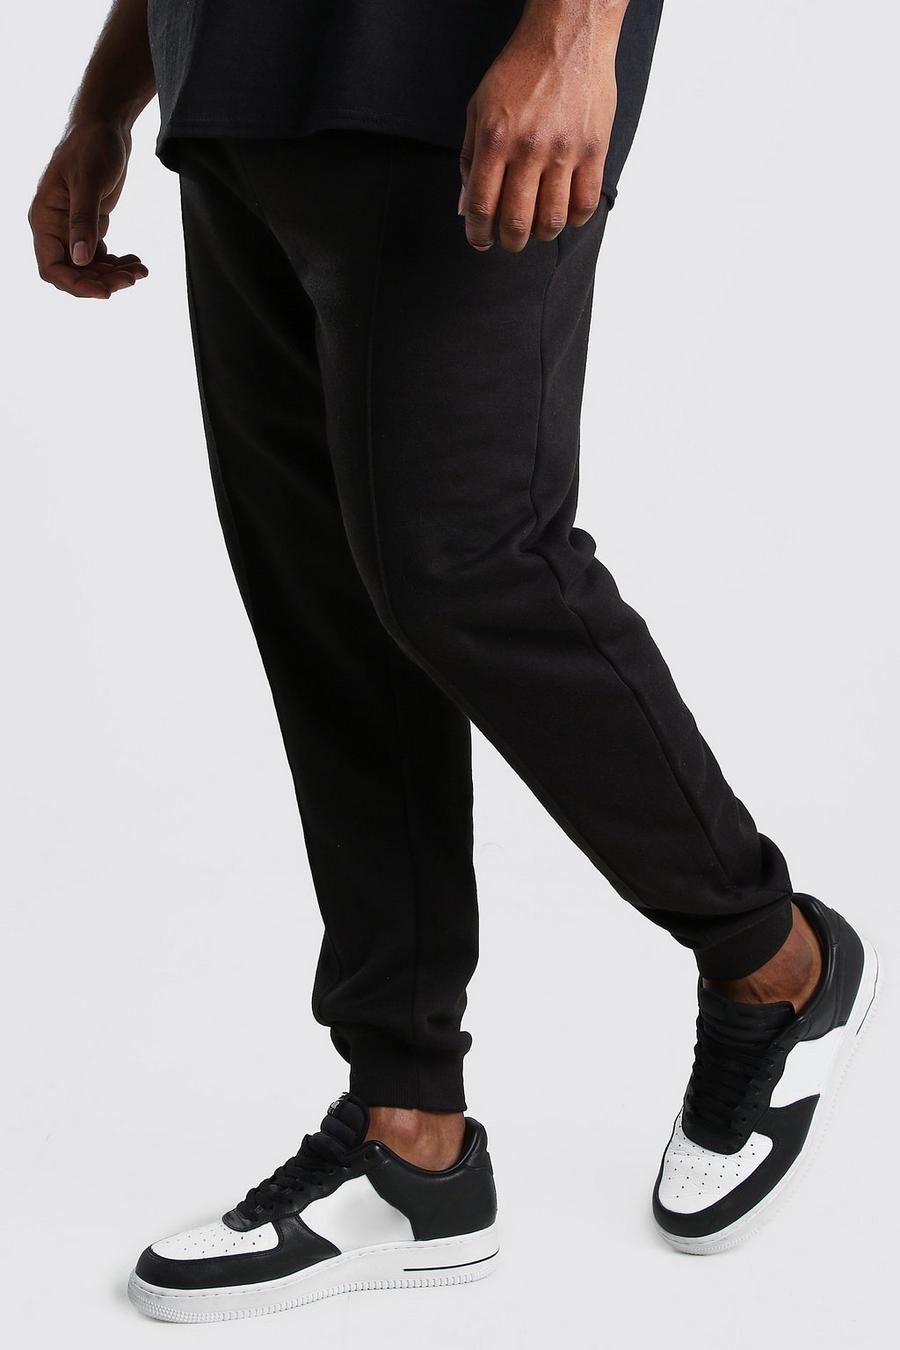 שחור מכנסי ריצה עם קפלים מבד ג'רסי לגברים גדולים וגבוהים image number 1